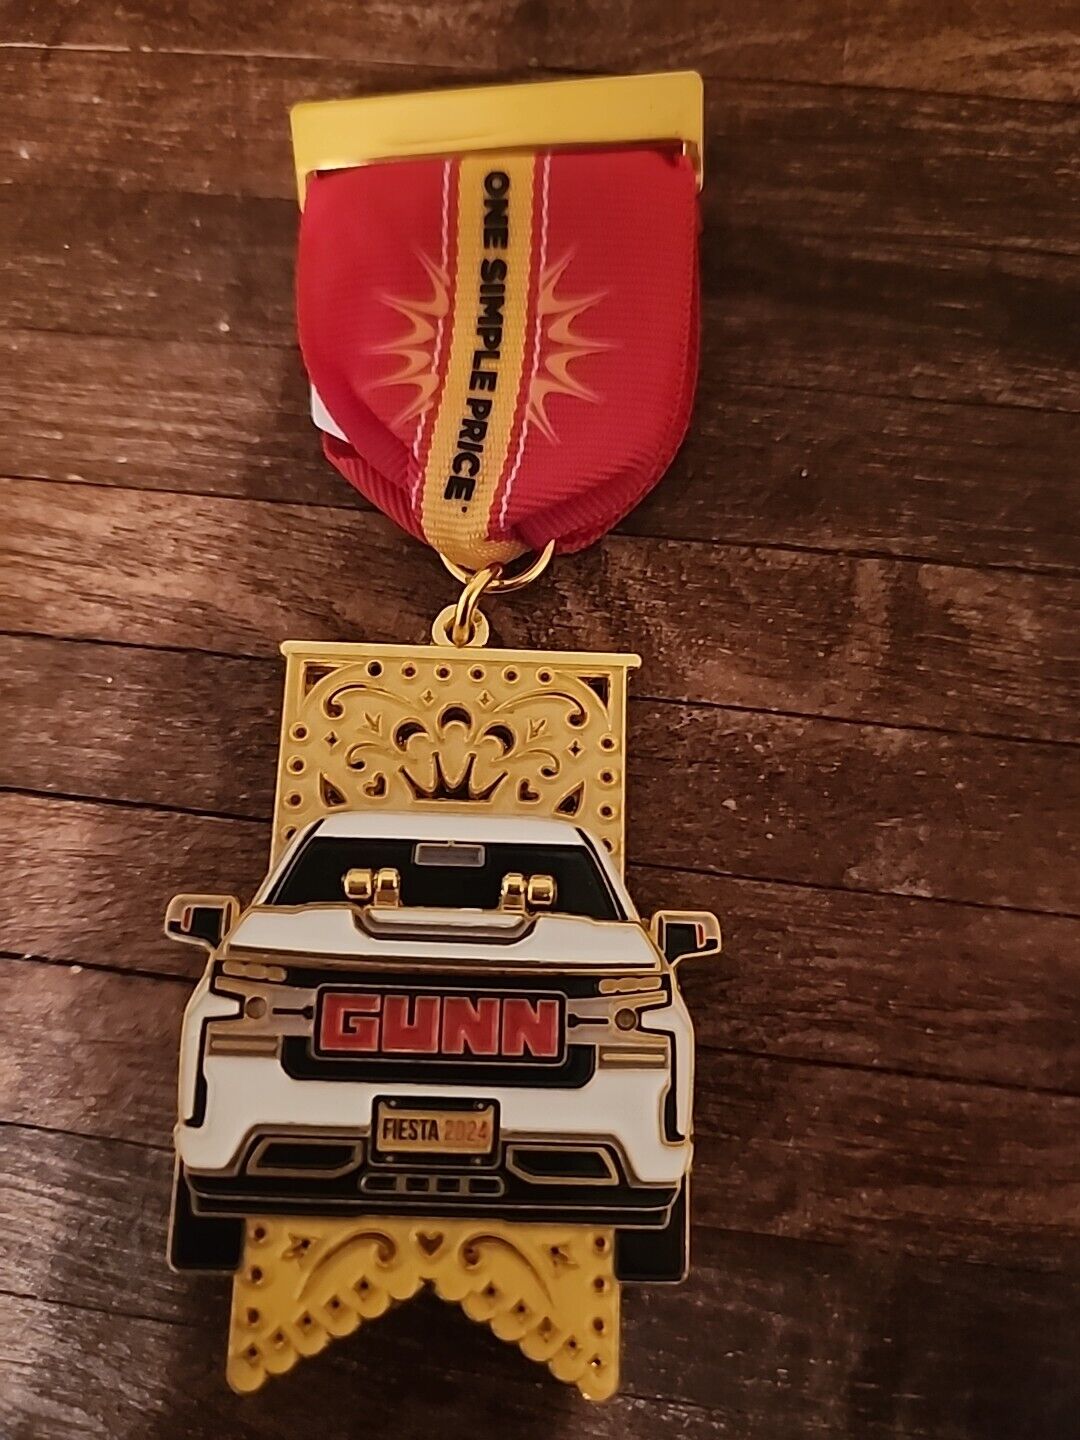 2024 Gunn Fiesta Medal with lights